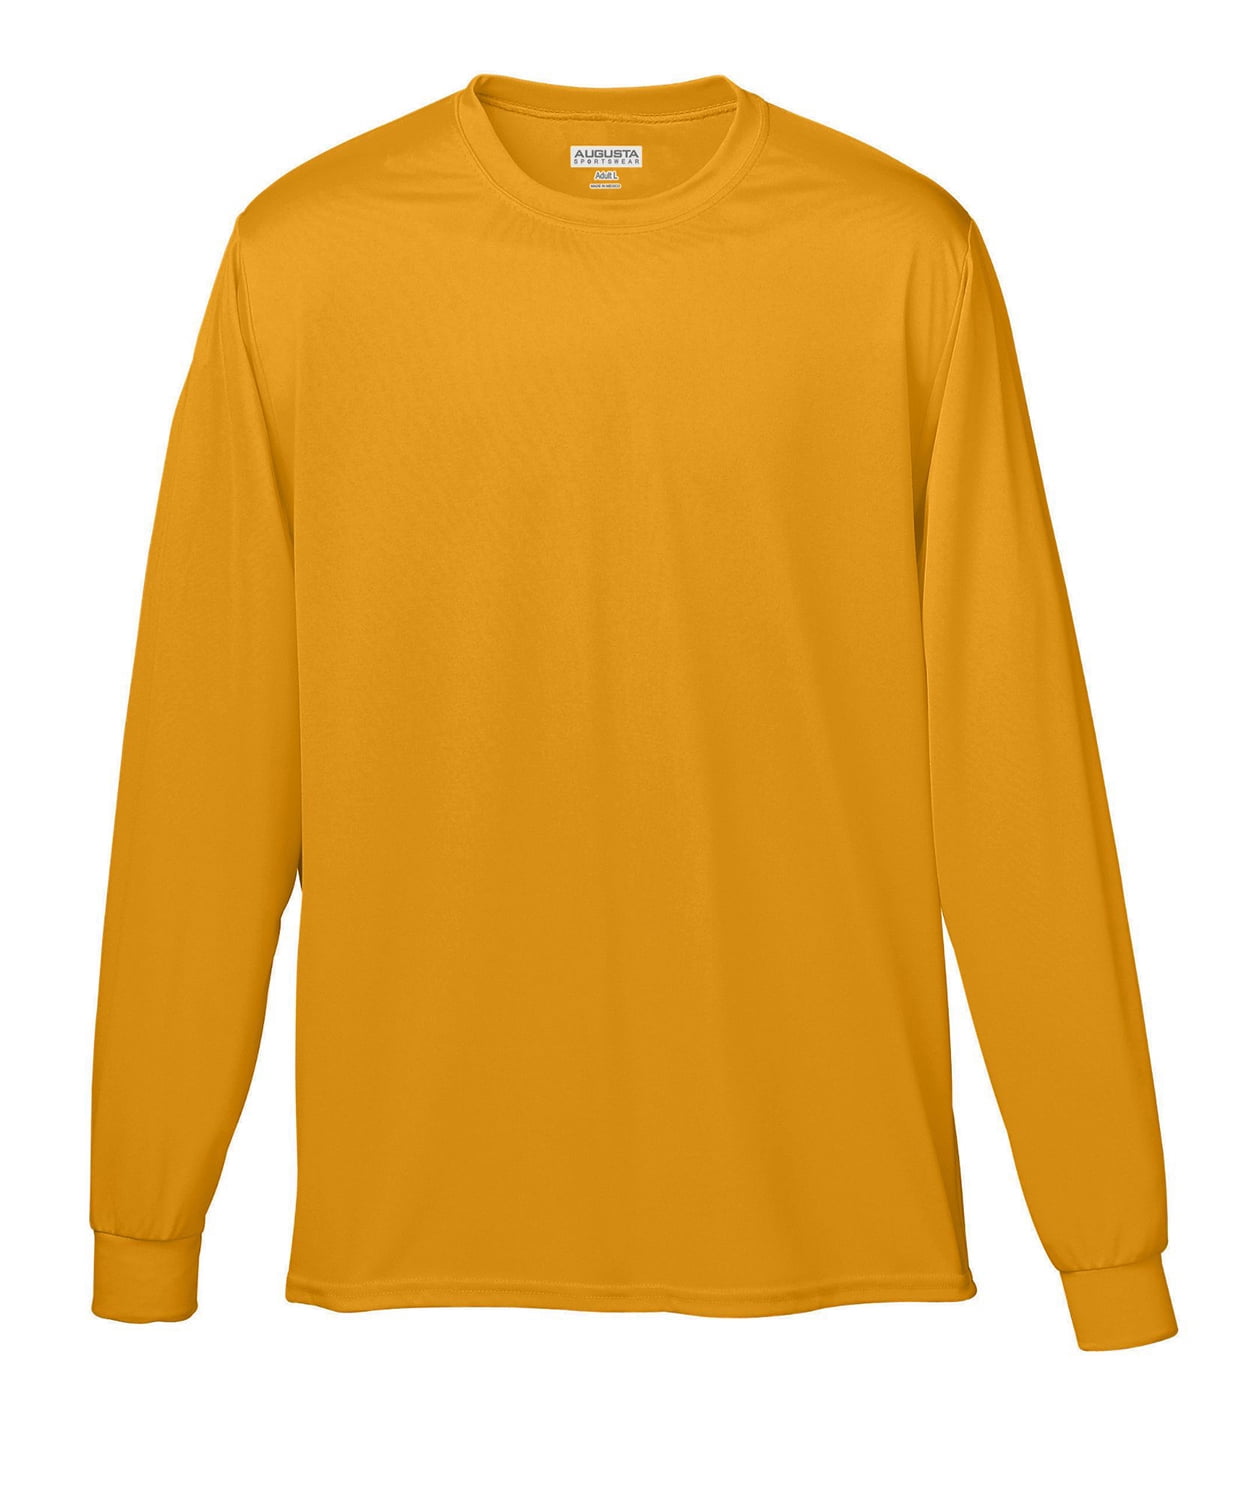 Augusta Sportswear Moisture Wicking Long Sleeve Jersey - Walmart.com